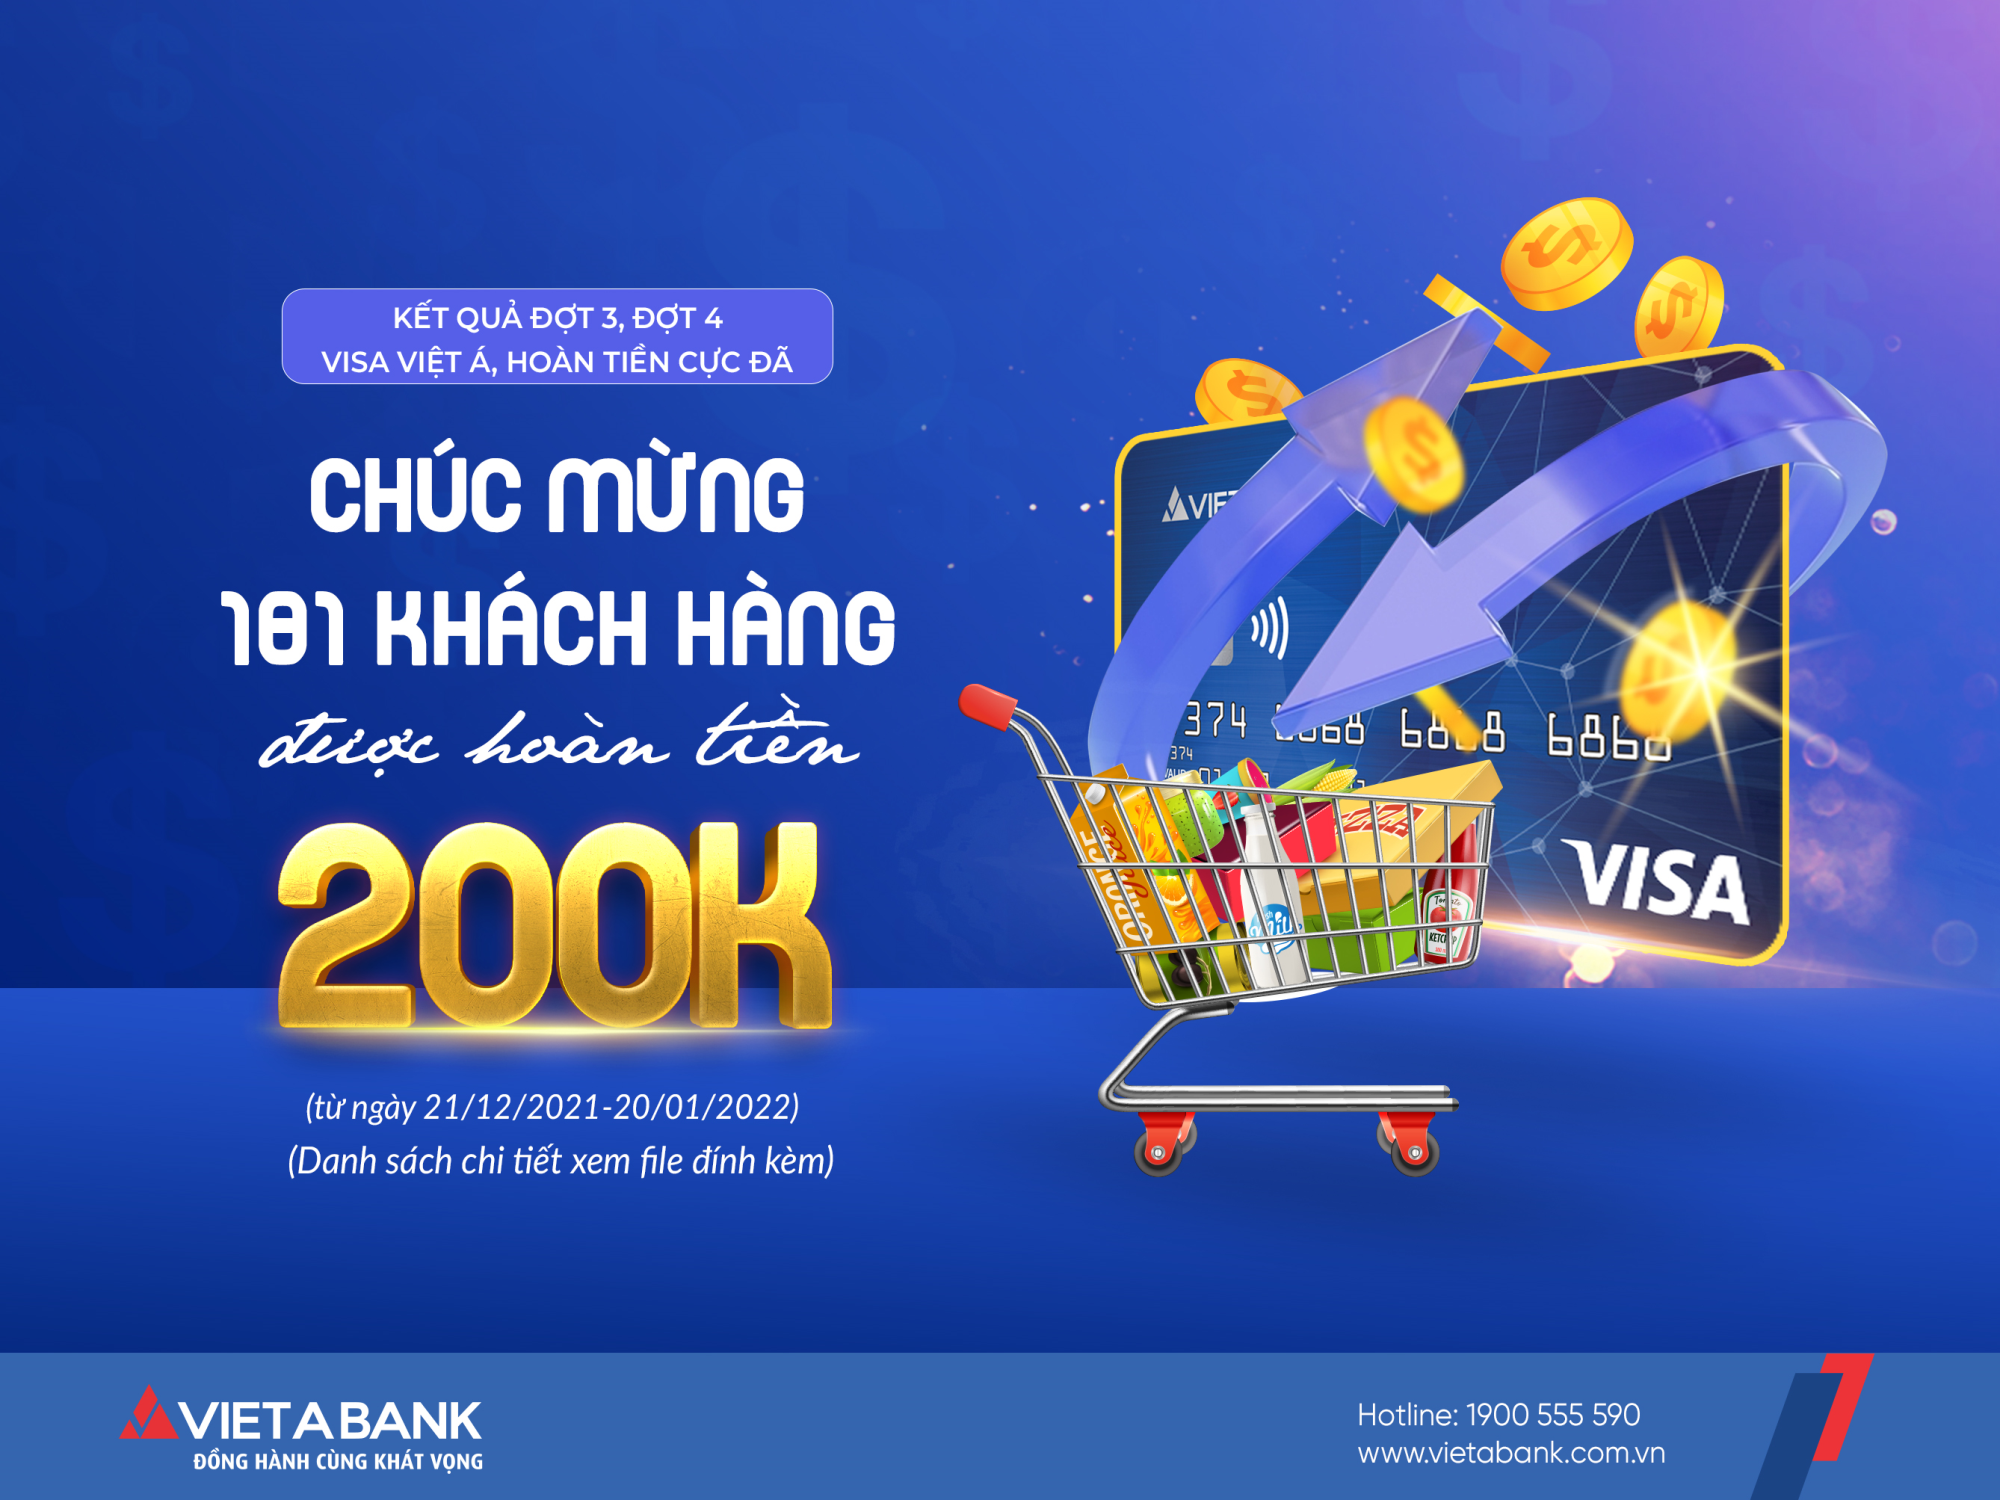 Kết quả đợt 3 và đợt 4 Chương trình "Visa Việt Á - Hoàn tiền cực đã" (Từ 21/12/2021 đến ngày 20/01/2021)